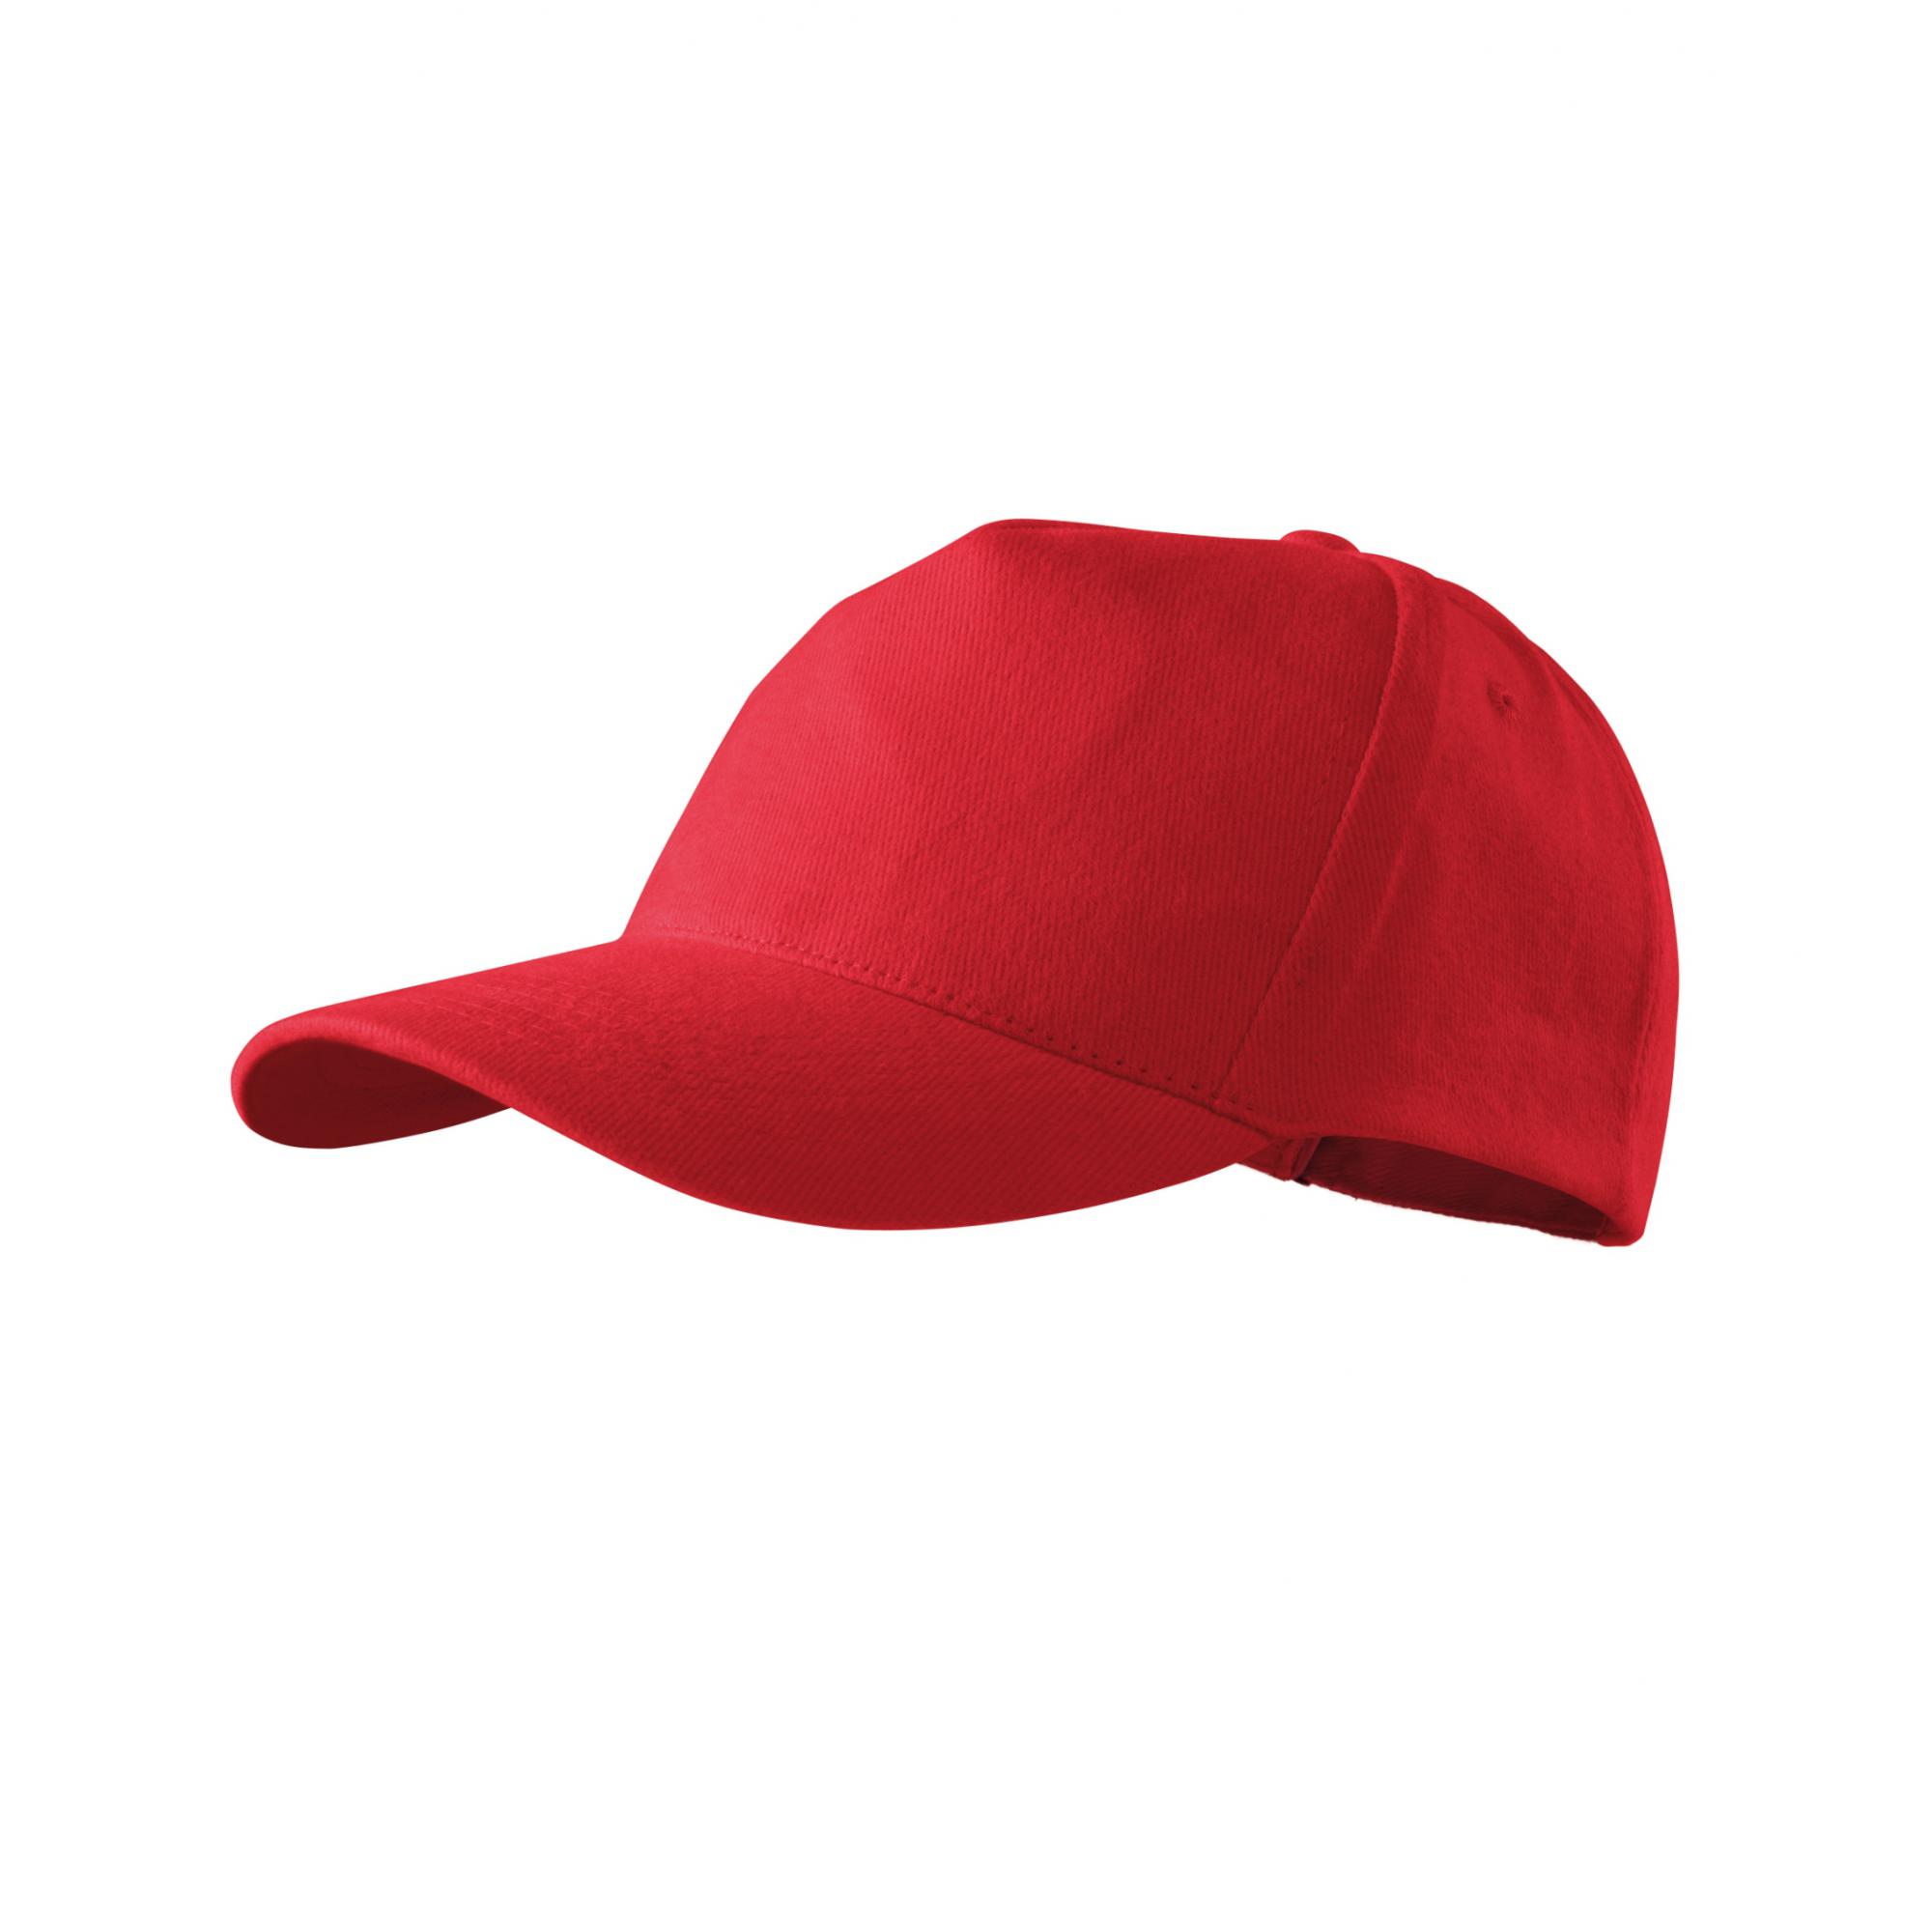 Şapcă unisex 5P 307 Rosu Marime universala